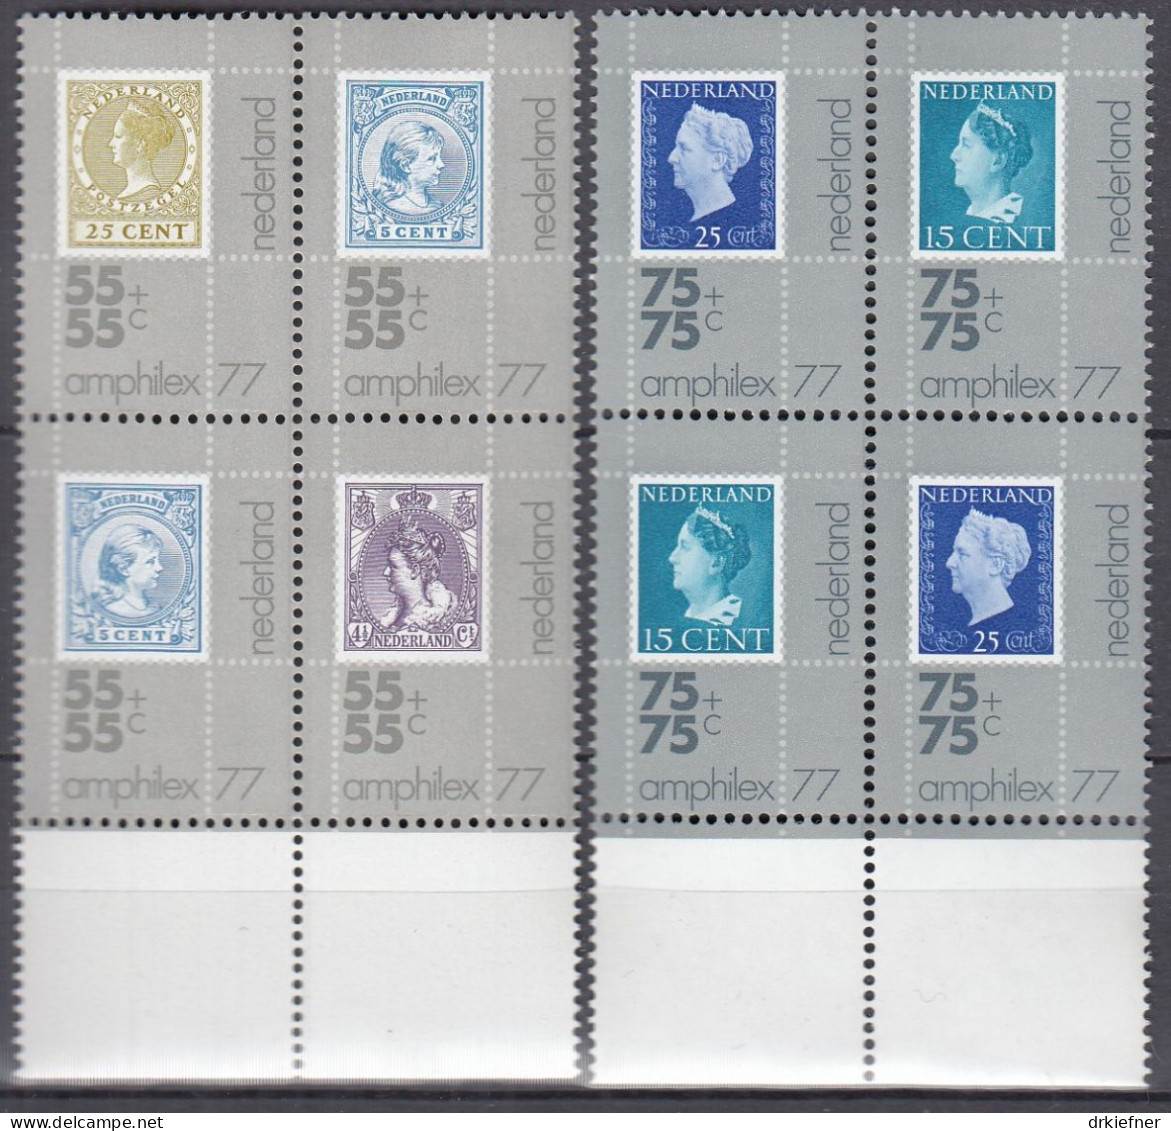 NIEDERLANDE  1083-1087, 4erBlock, Postfrisch **, Internationale Briefmarkenausstellung AMPHILEX ’77, 1976 - Neufs